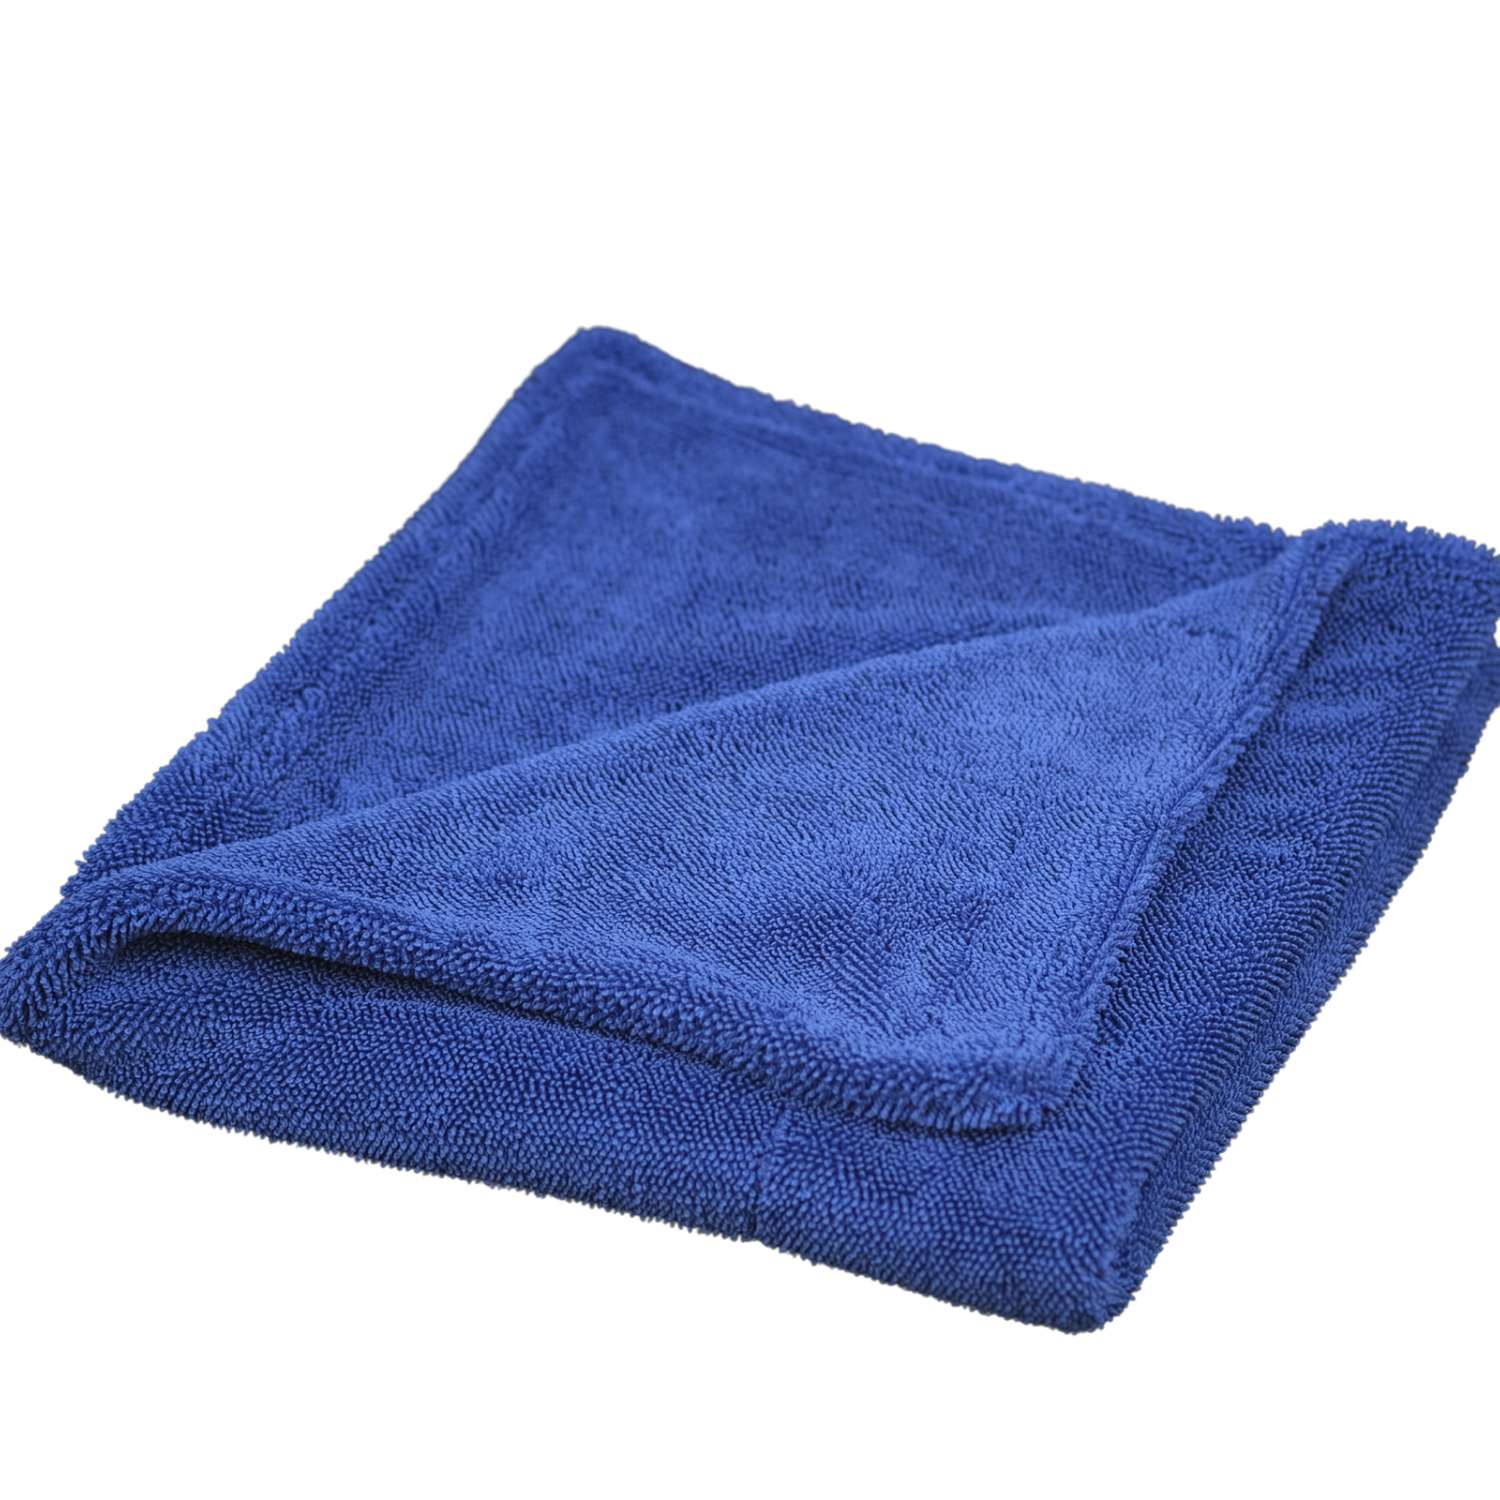 Κορεάτικη πετσέτα στεγνώματος με στριφτό βρόχο